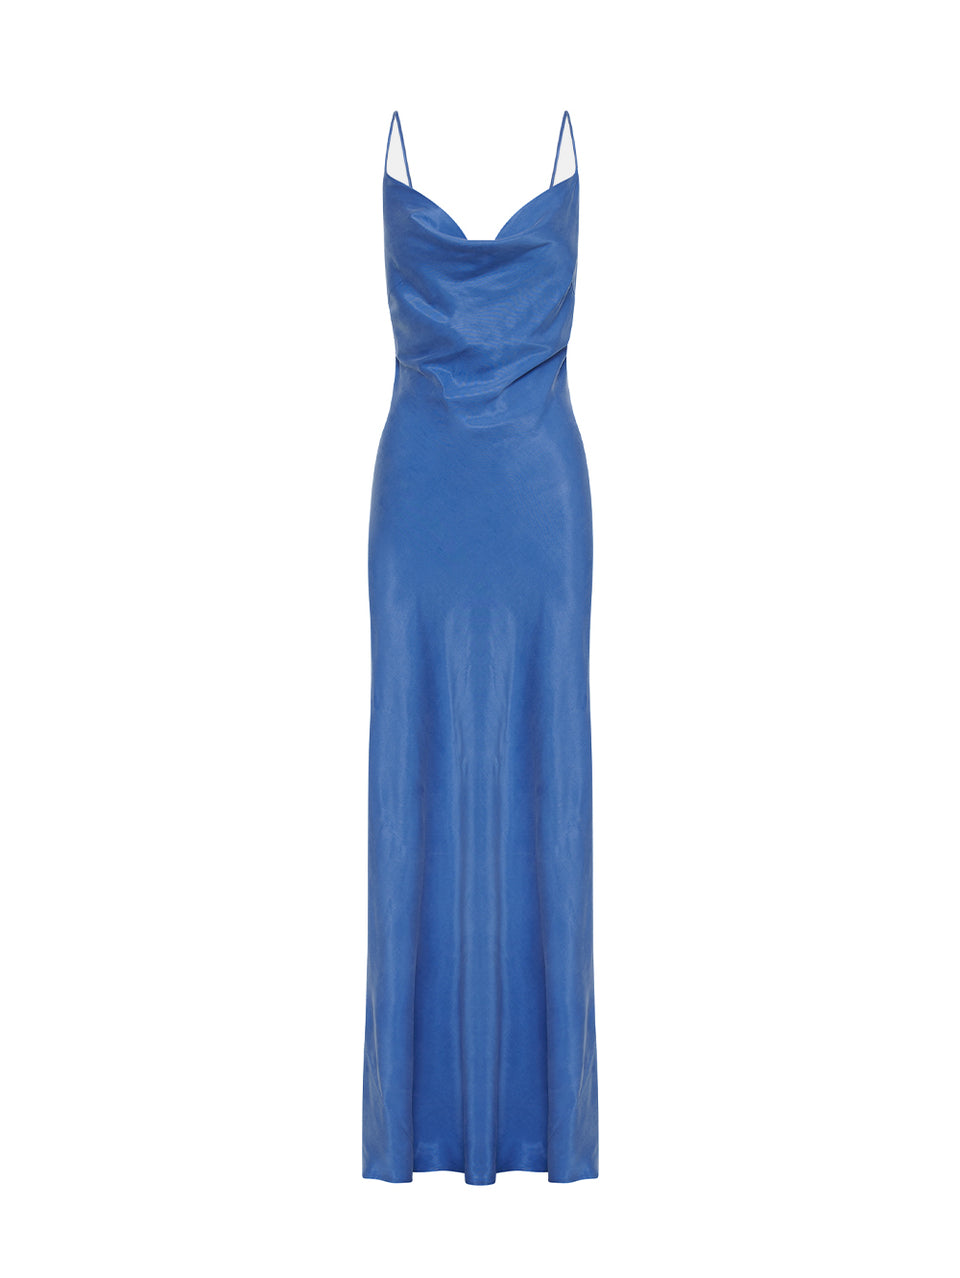 Raya Slip Dress KIVARI | Blue slip maxi dress